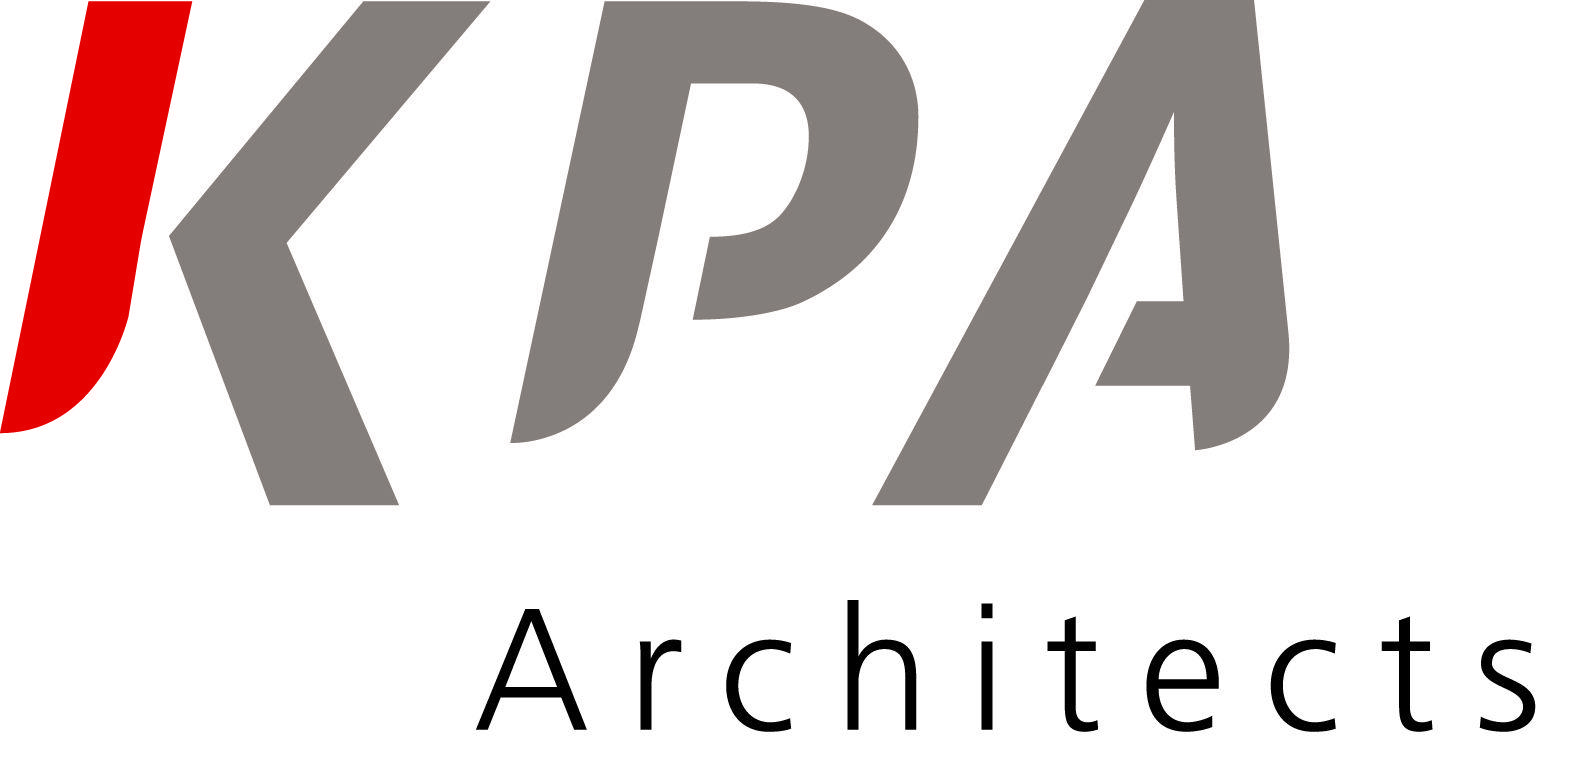 Kpa Logo - KPA Architects